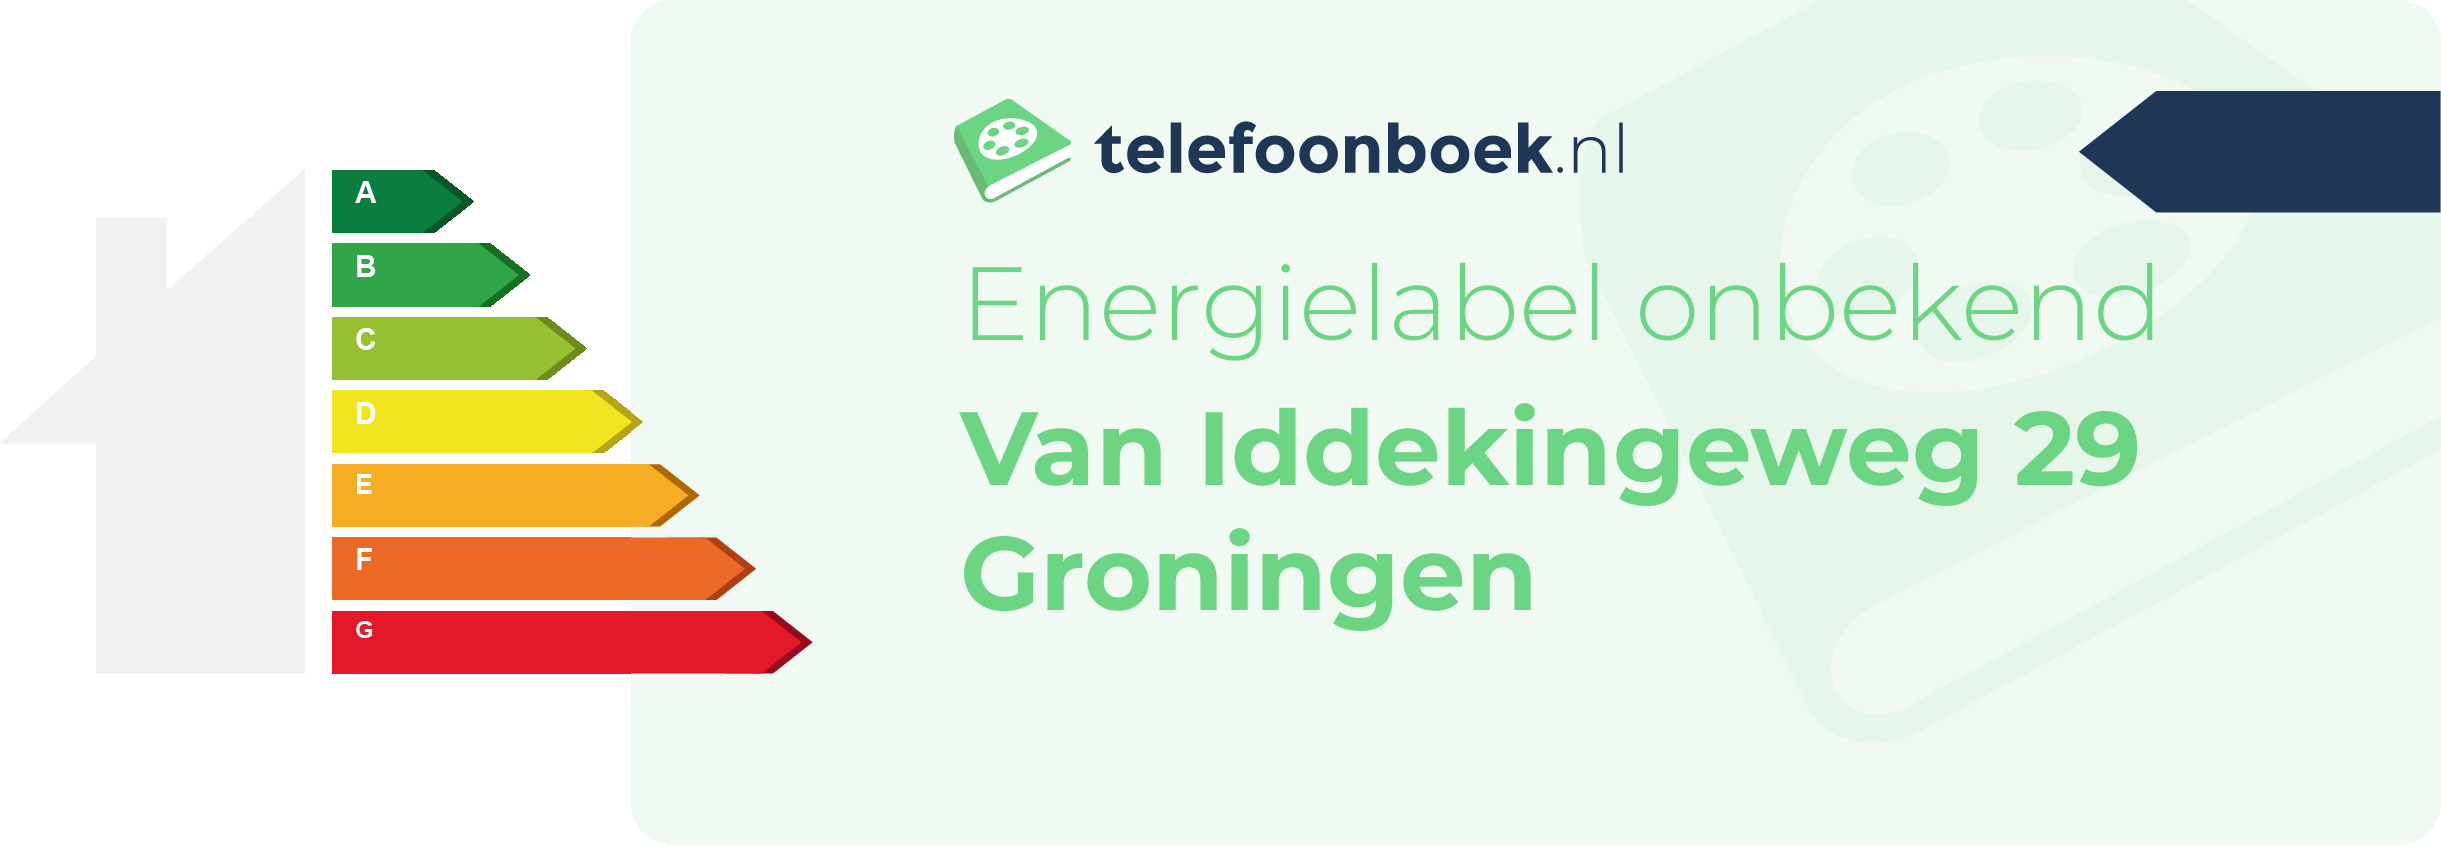 Energielabel Van Iddekingeweg 29 Groningen